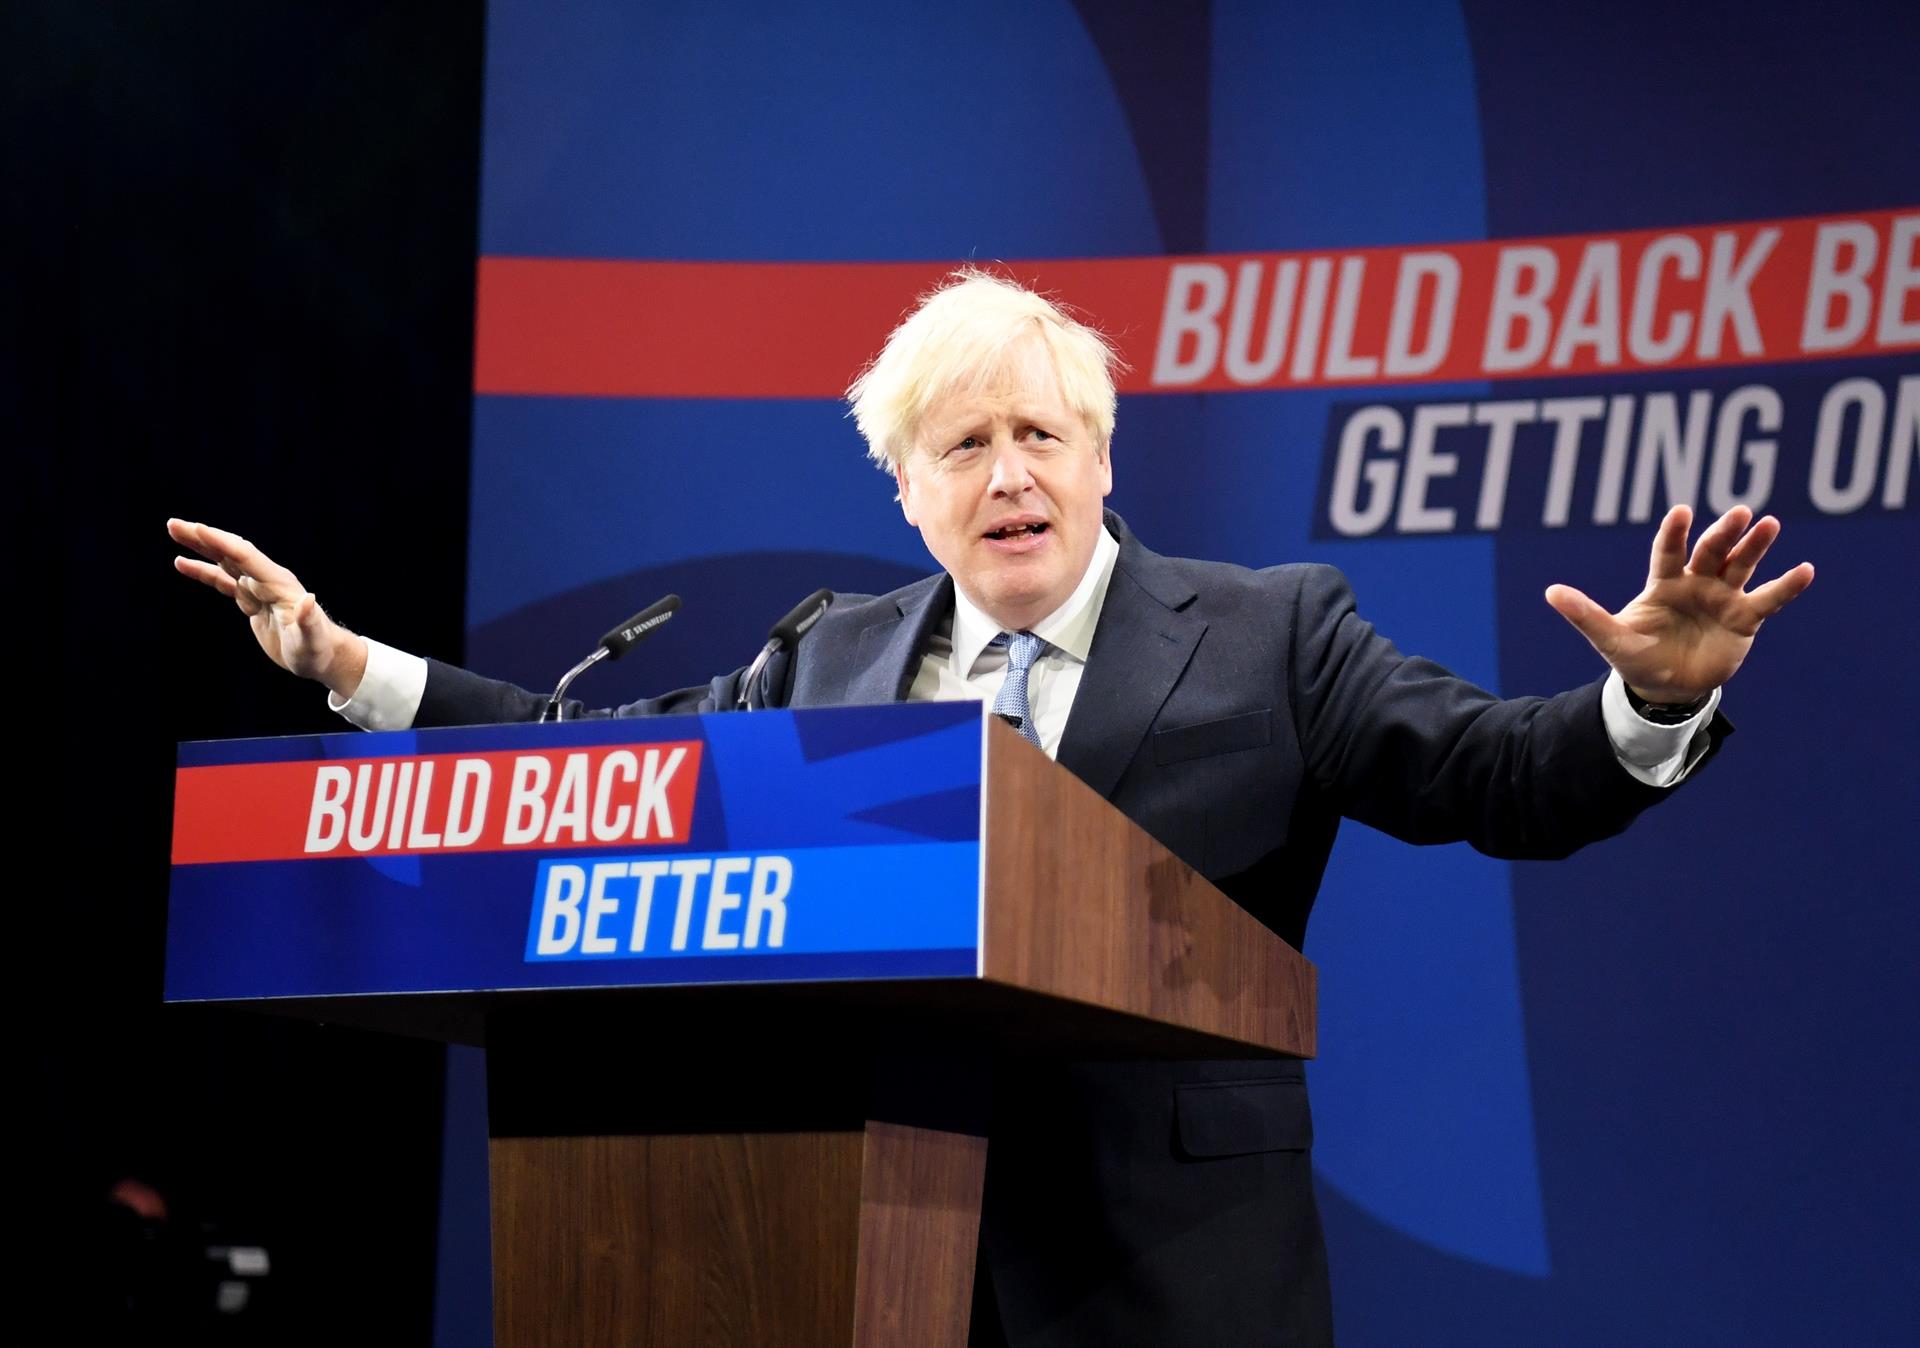 El primer ministro británico, Boris Johnson, en su discurso este miércoles ante el congreso del Partido Conservador que se celebra en Manchester, Reino Unido. EFE/EPA/NEIL HALL